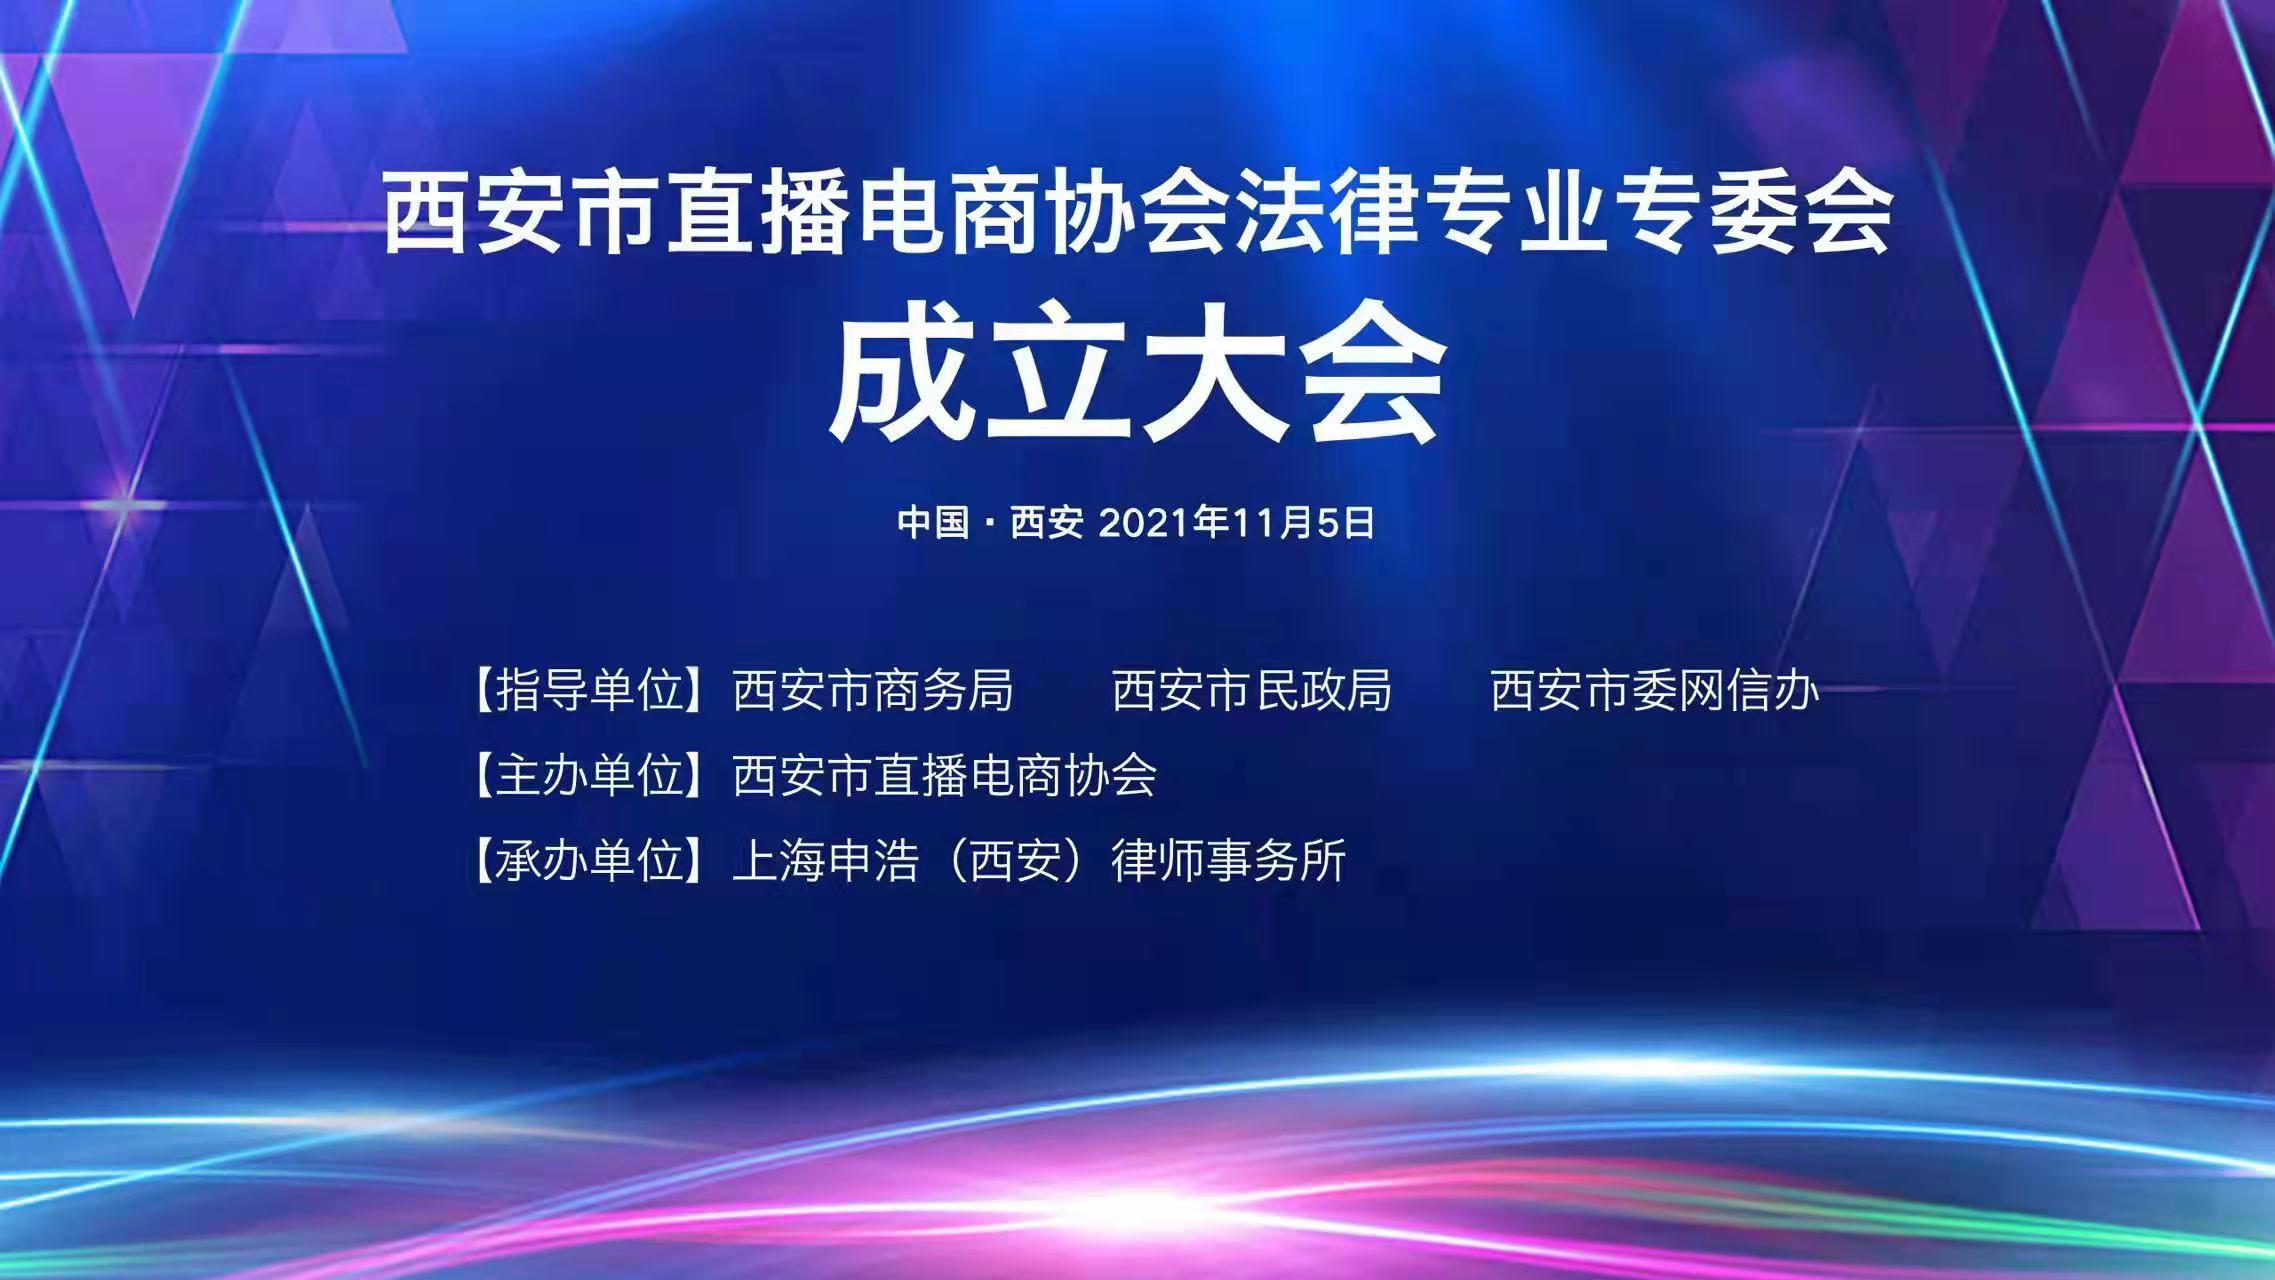 申浩西安承办“西安市直播电商协会法律专业委员会成立大会”日前顺利举行 | 申浩动态